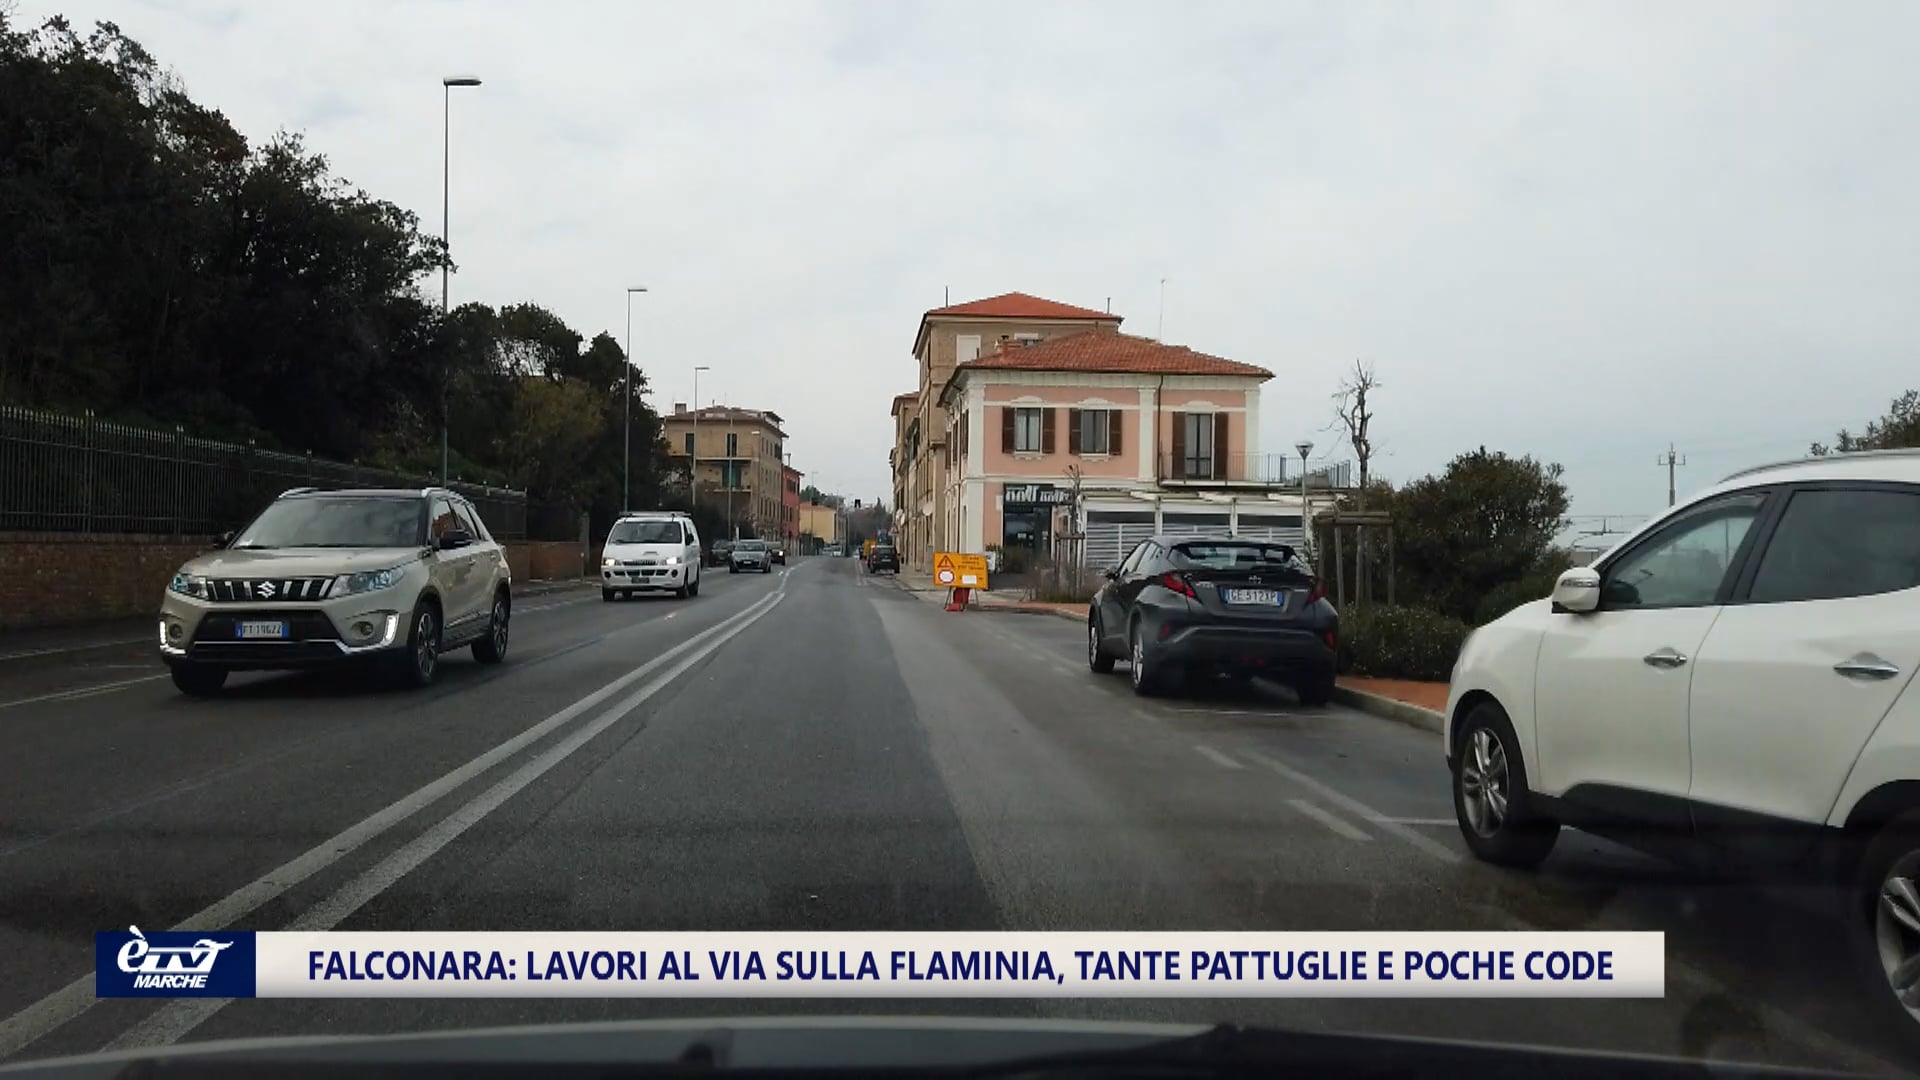 Prova superata per i lavori in via Flaminia tra Falconara e Ancona. Tanti cartelli, pattuglie e poche code